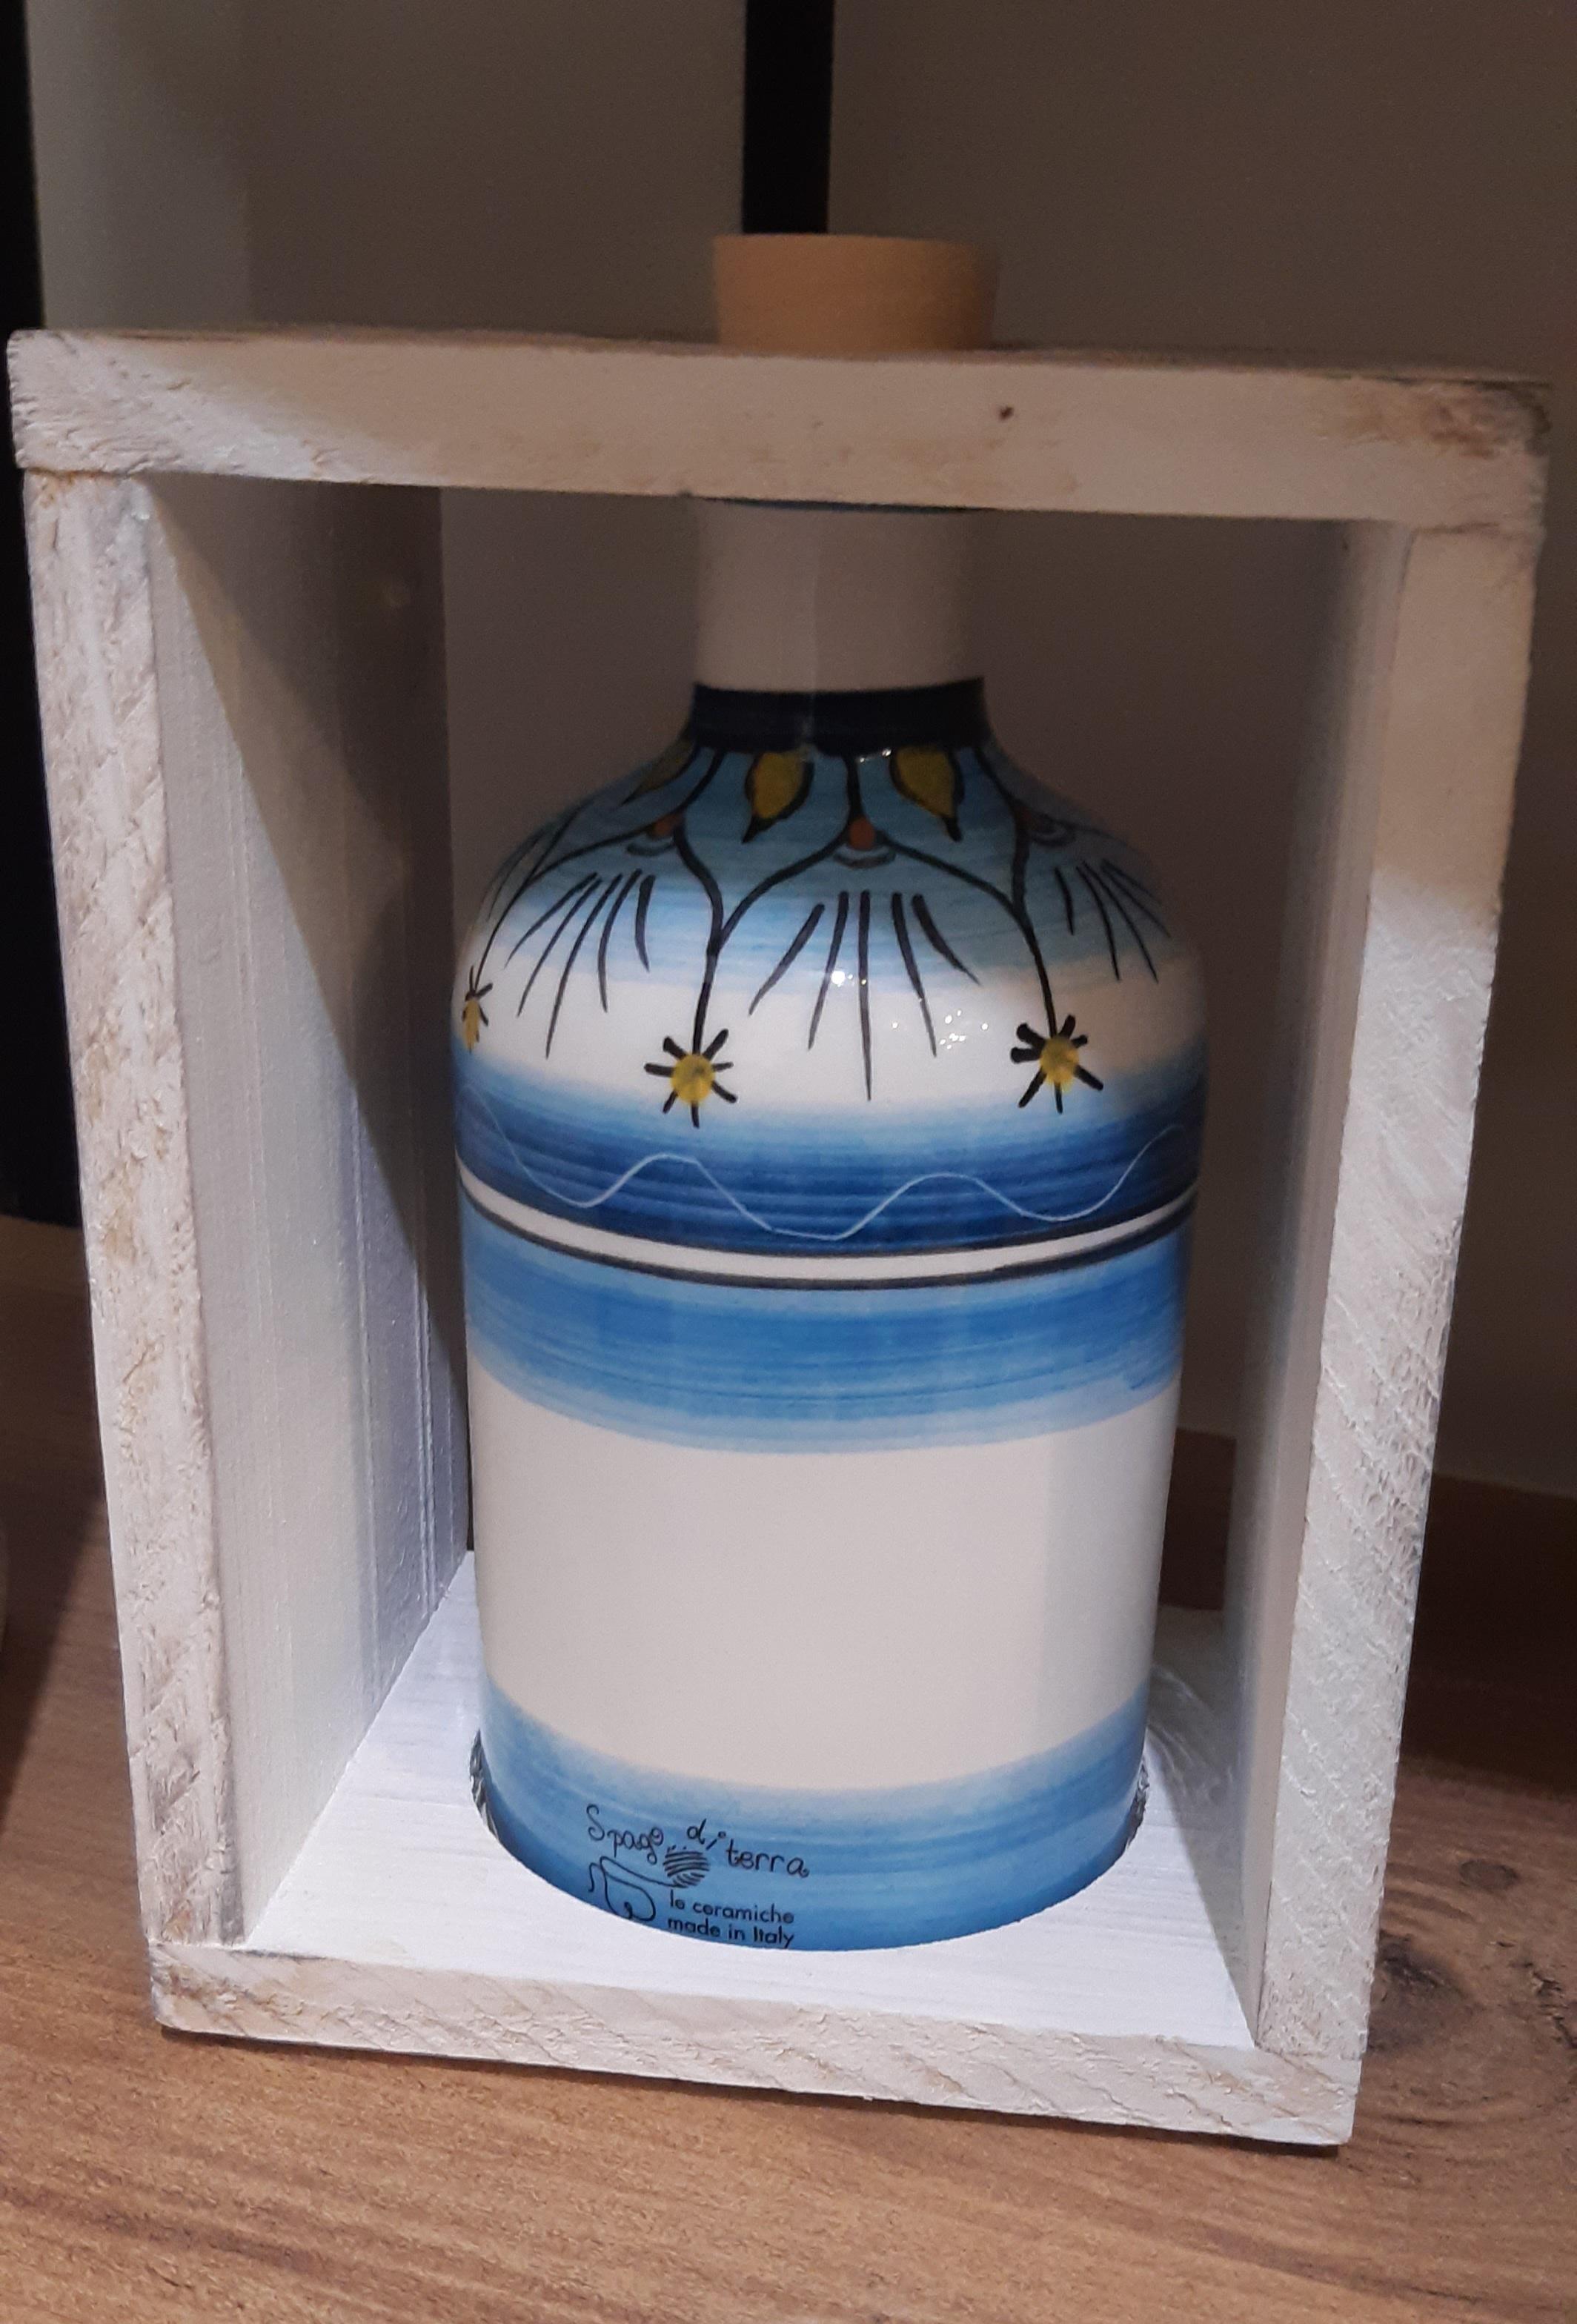 Bottiglia in ceramica con cornice di legno - 13x16 cm - Spago di Terra